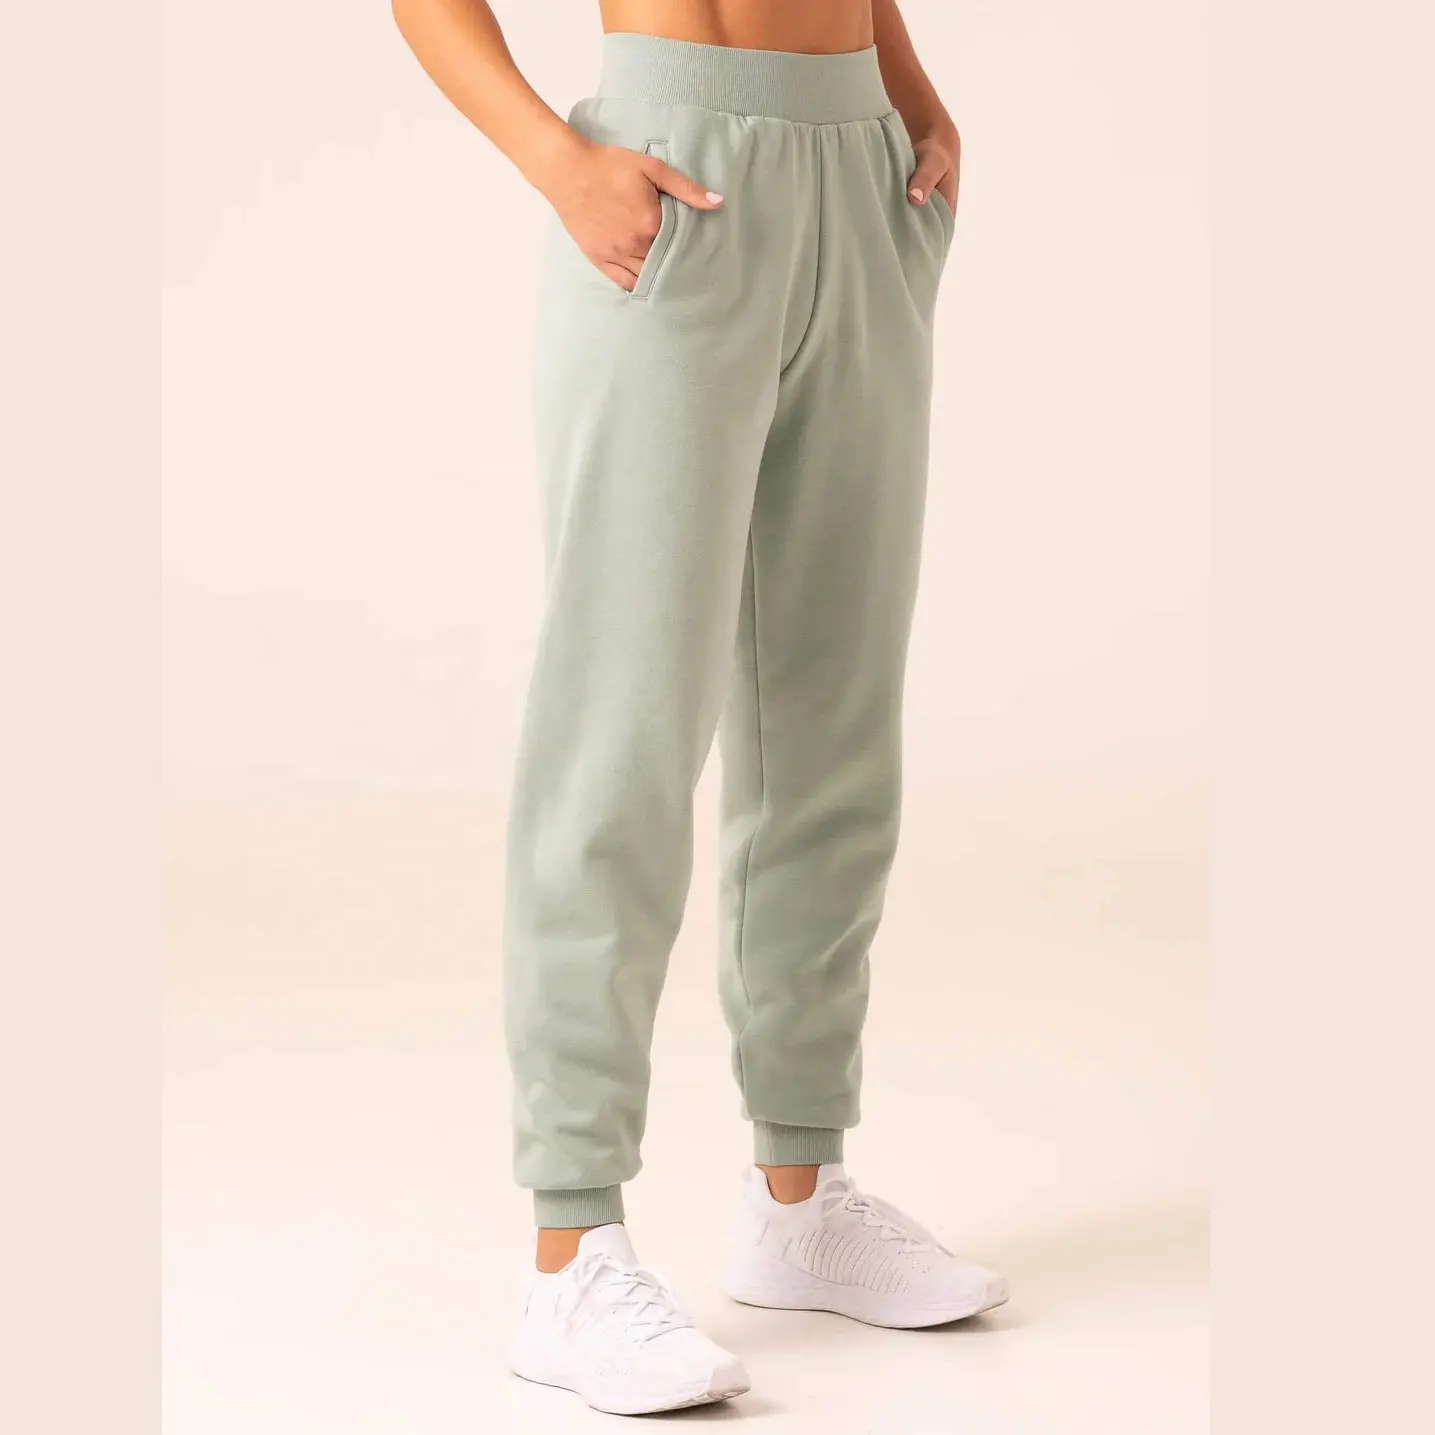 Pantalones de chándal para mujer, pantalón de chándal con logotipo personalizado holgado, de algodón suave, transpirable, para entrenamiento de gimnasia